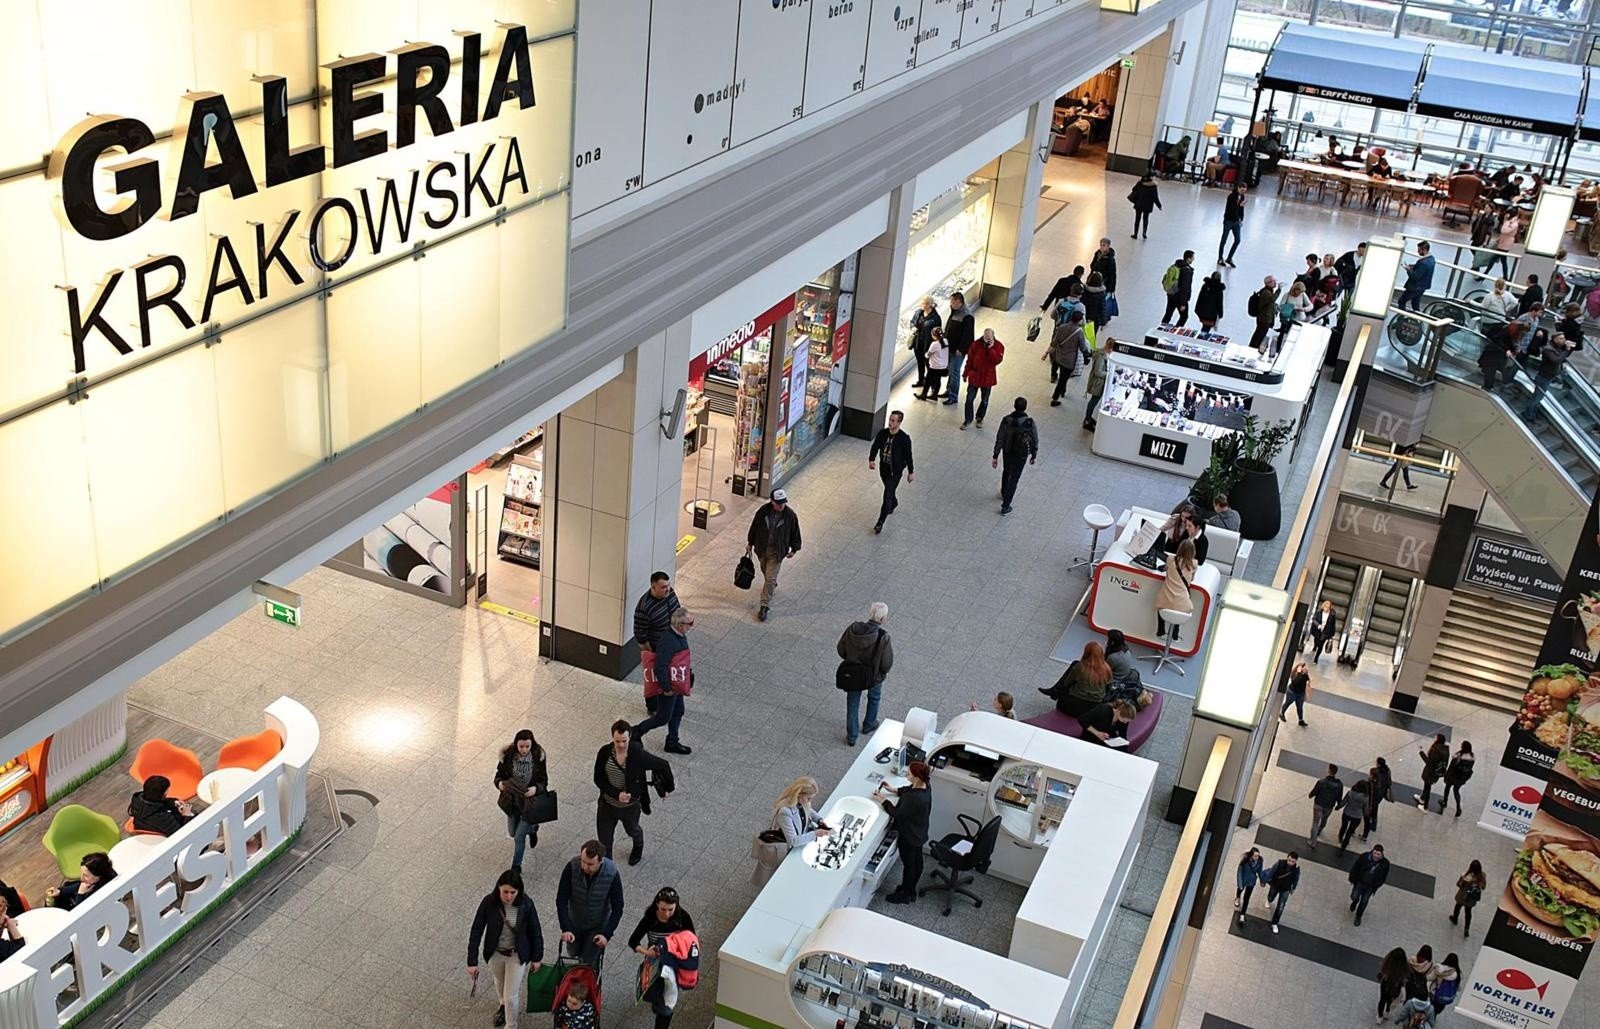 Fałszywy alarm bombowy. Galeria Krakowska była ewakuowana | Gazeta Krakowska